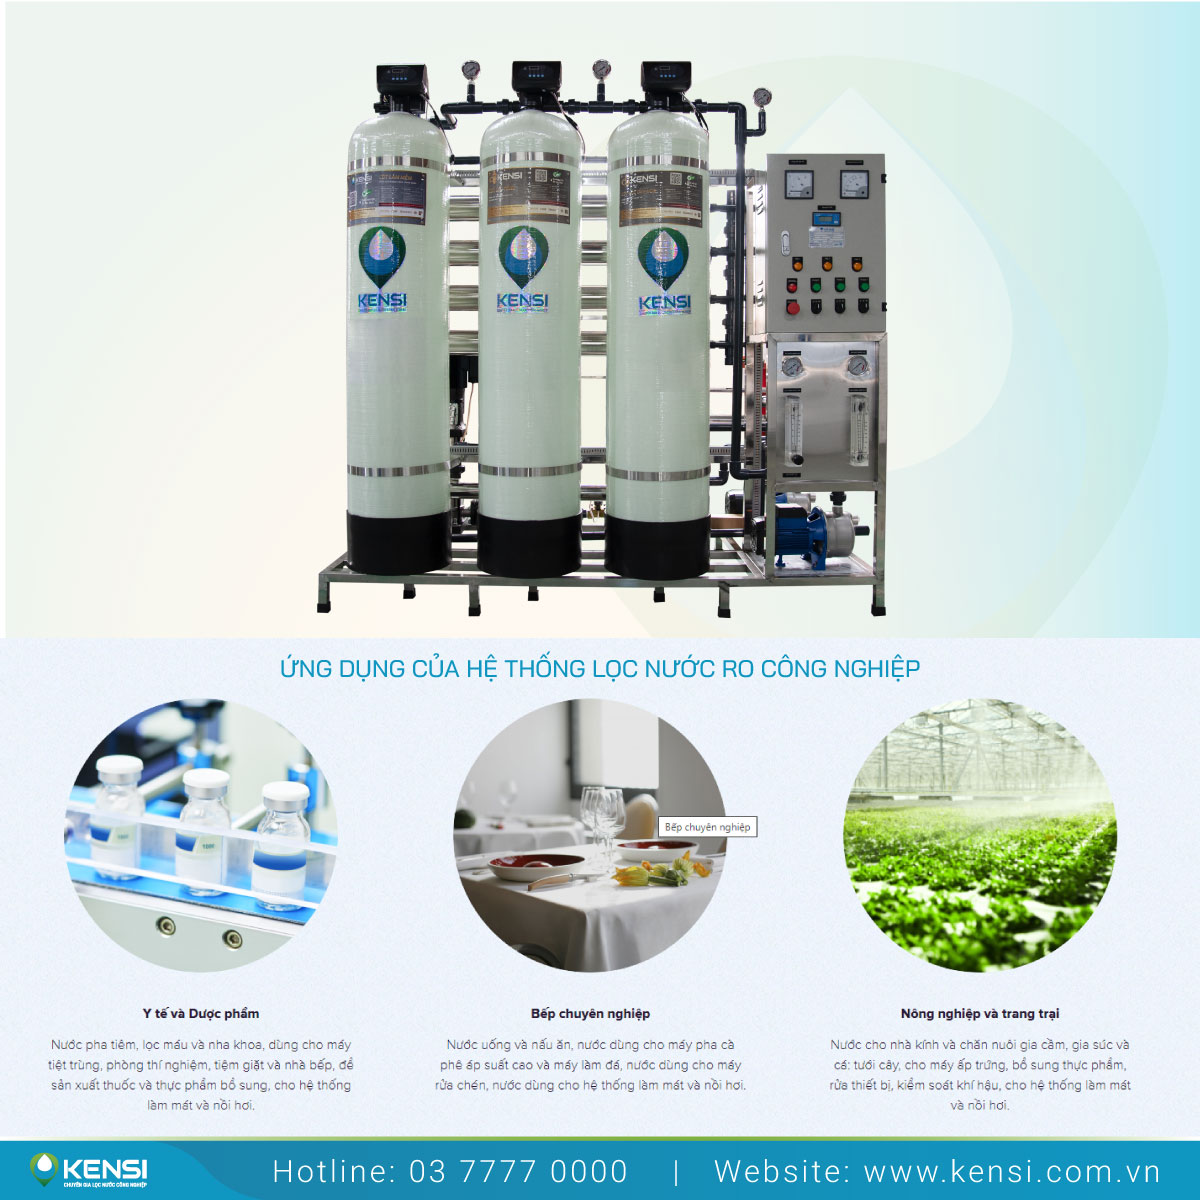 Tekcom cung cấp, lắp đặt hệ thống lọc nước RO công nghiệp trên toàn quốc